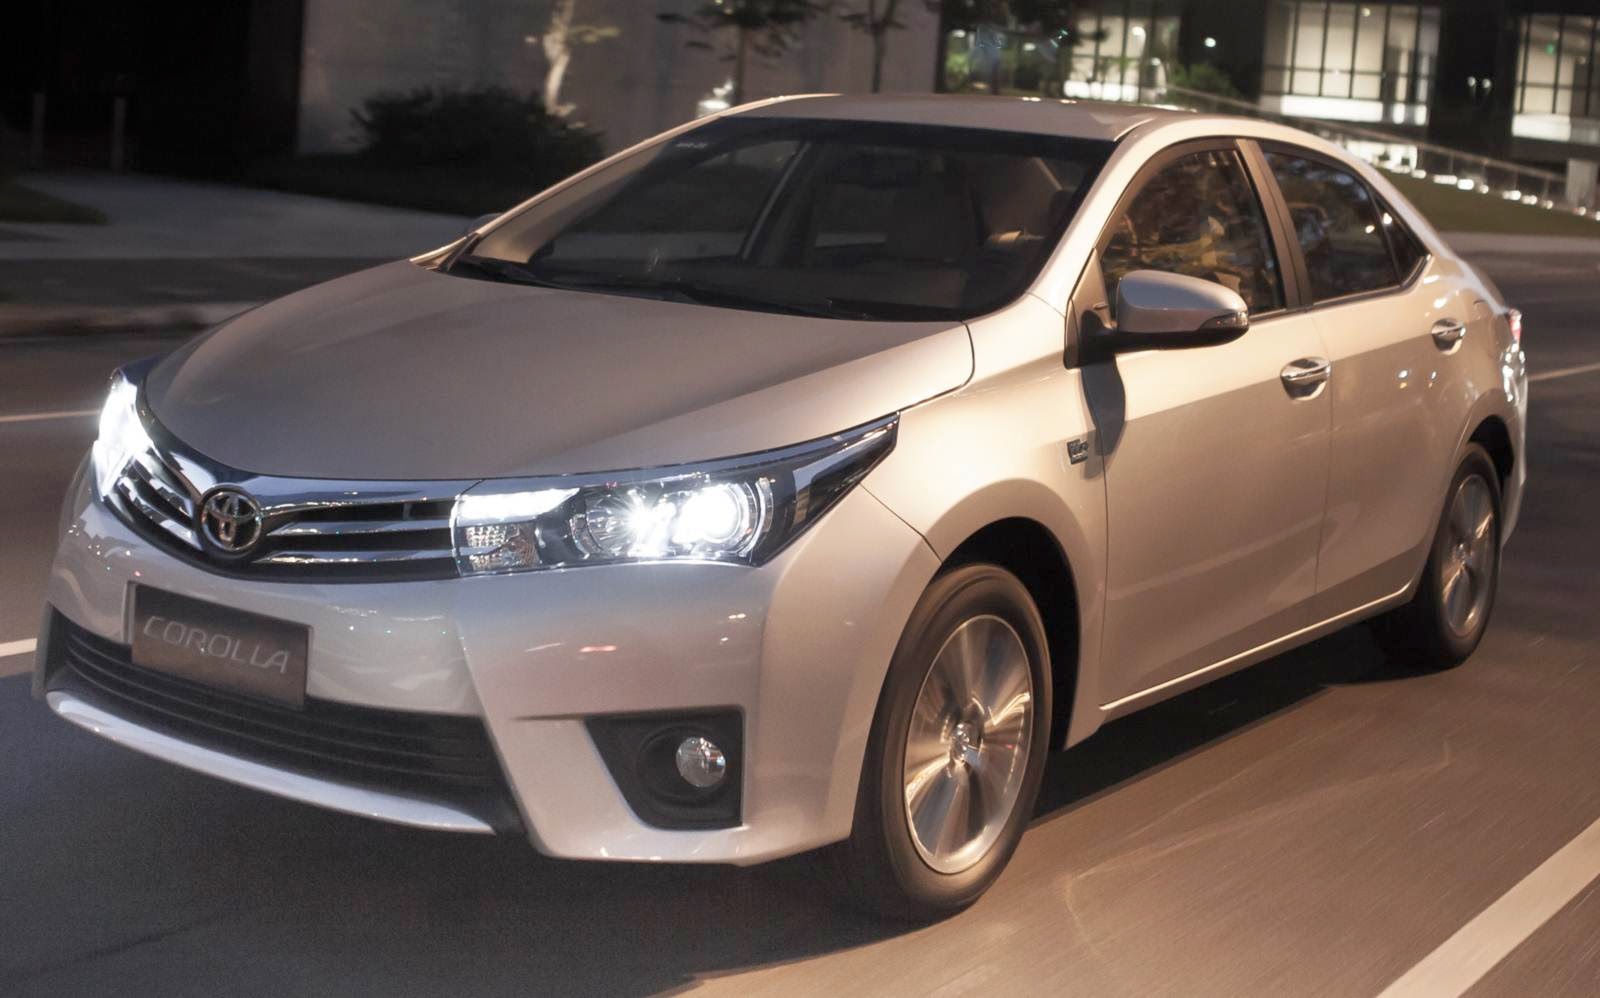 Novo Toyota Corolla 2015 fotos